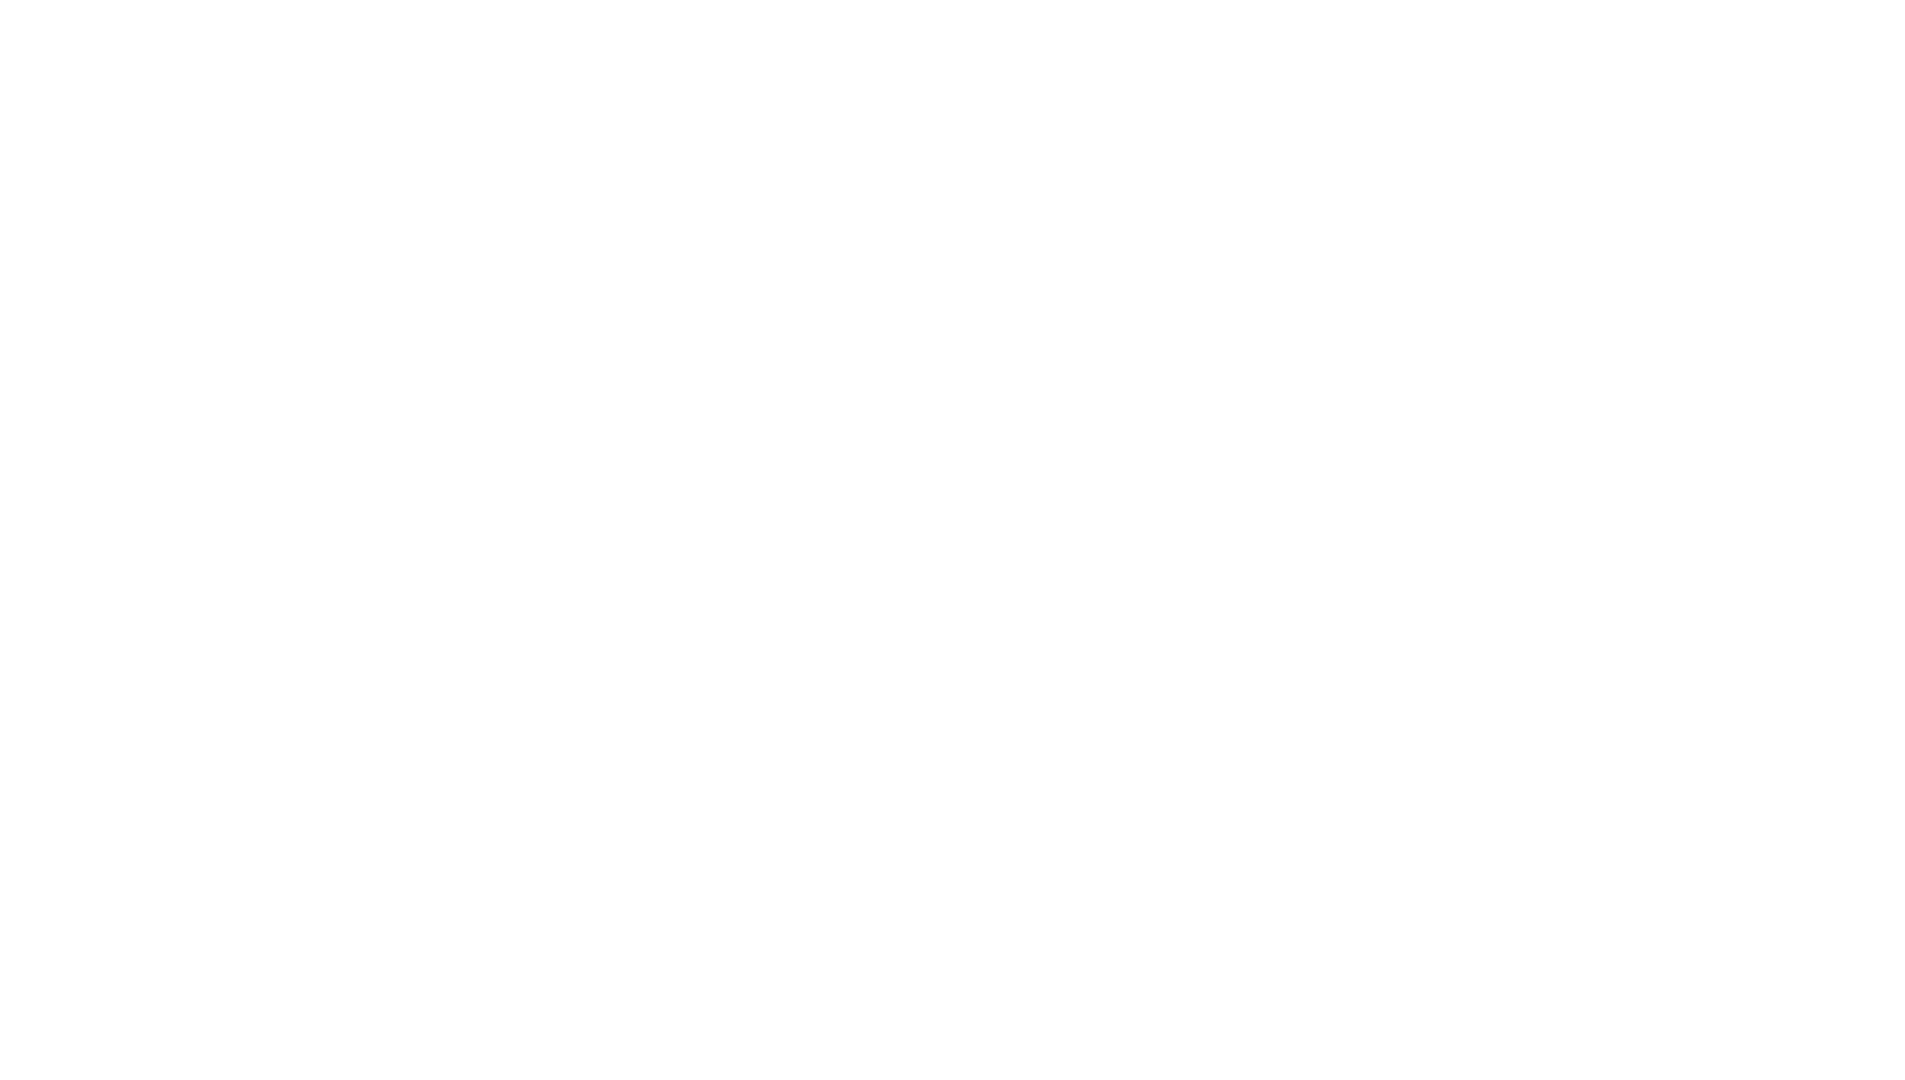 Paul Maggetti